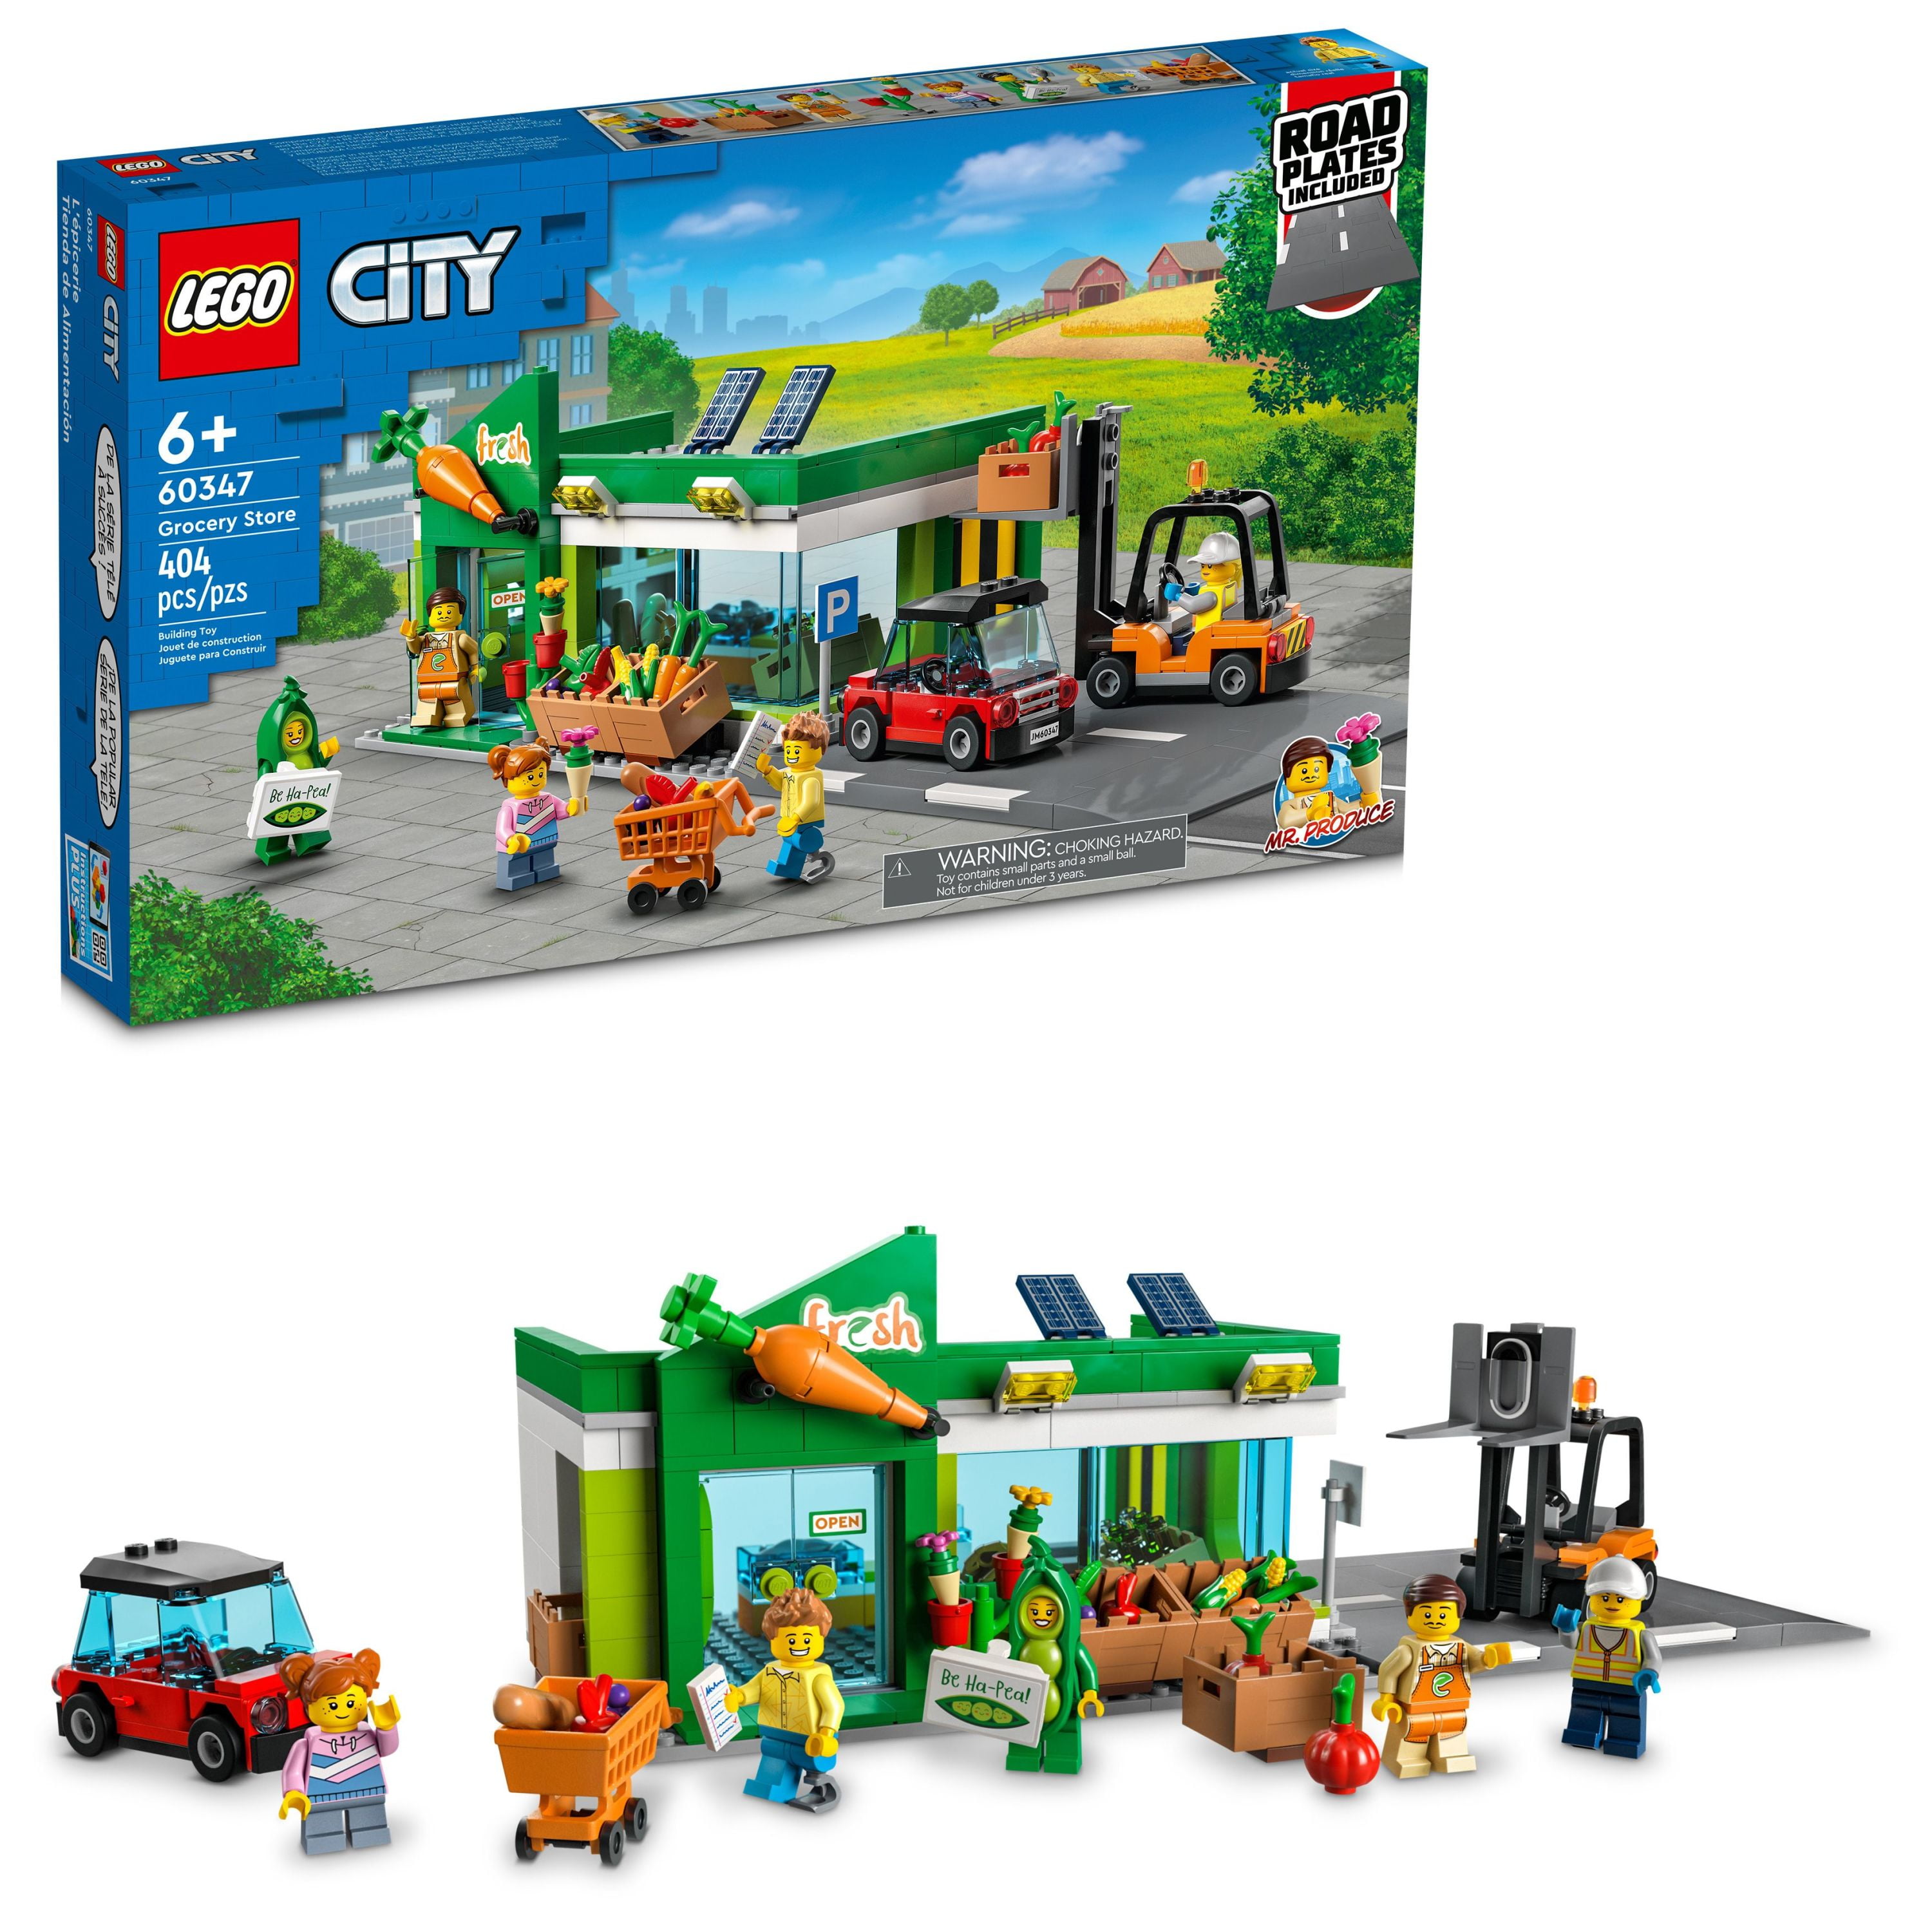 Dormido En cantidad Inútil LEGO City Grocery Store 60347 Building Set (404 Pieces) - Walmart.com